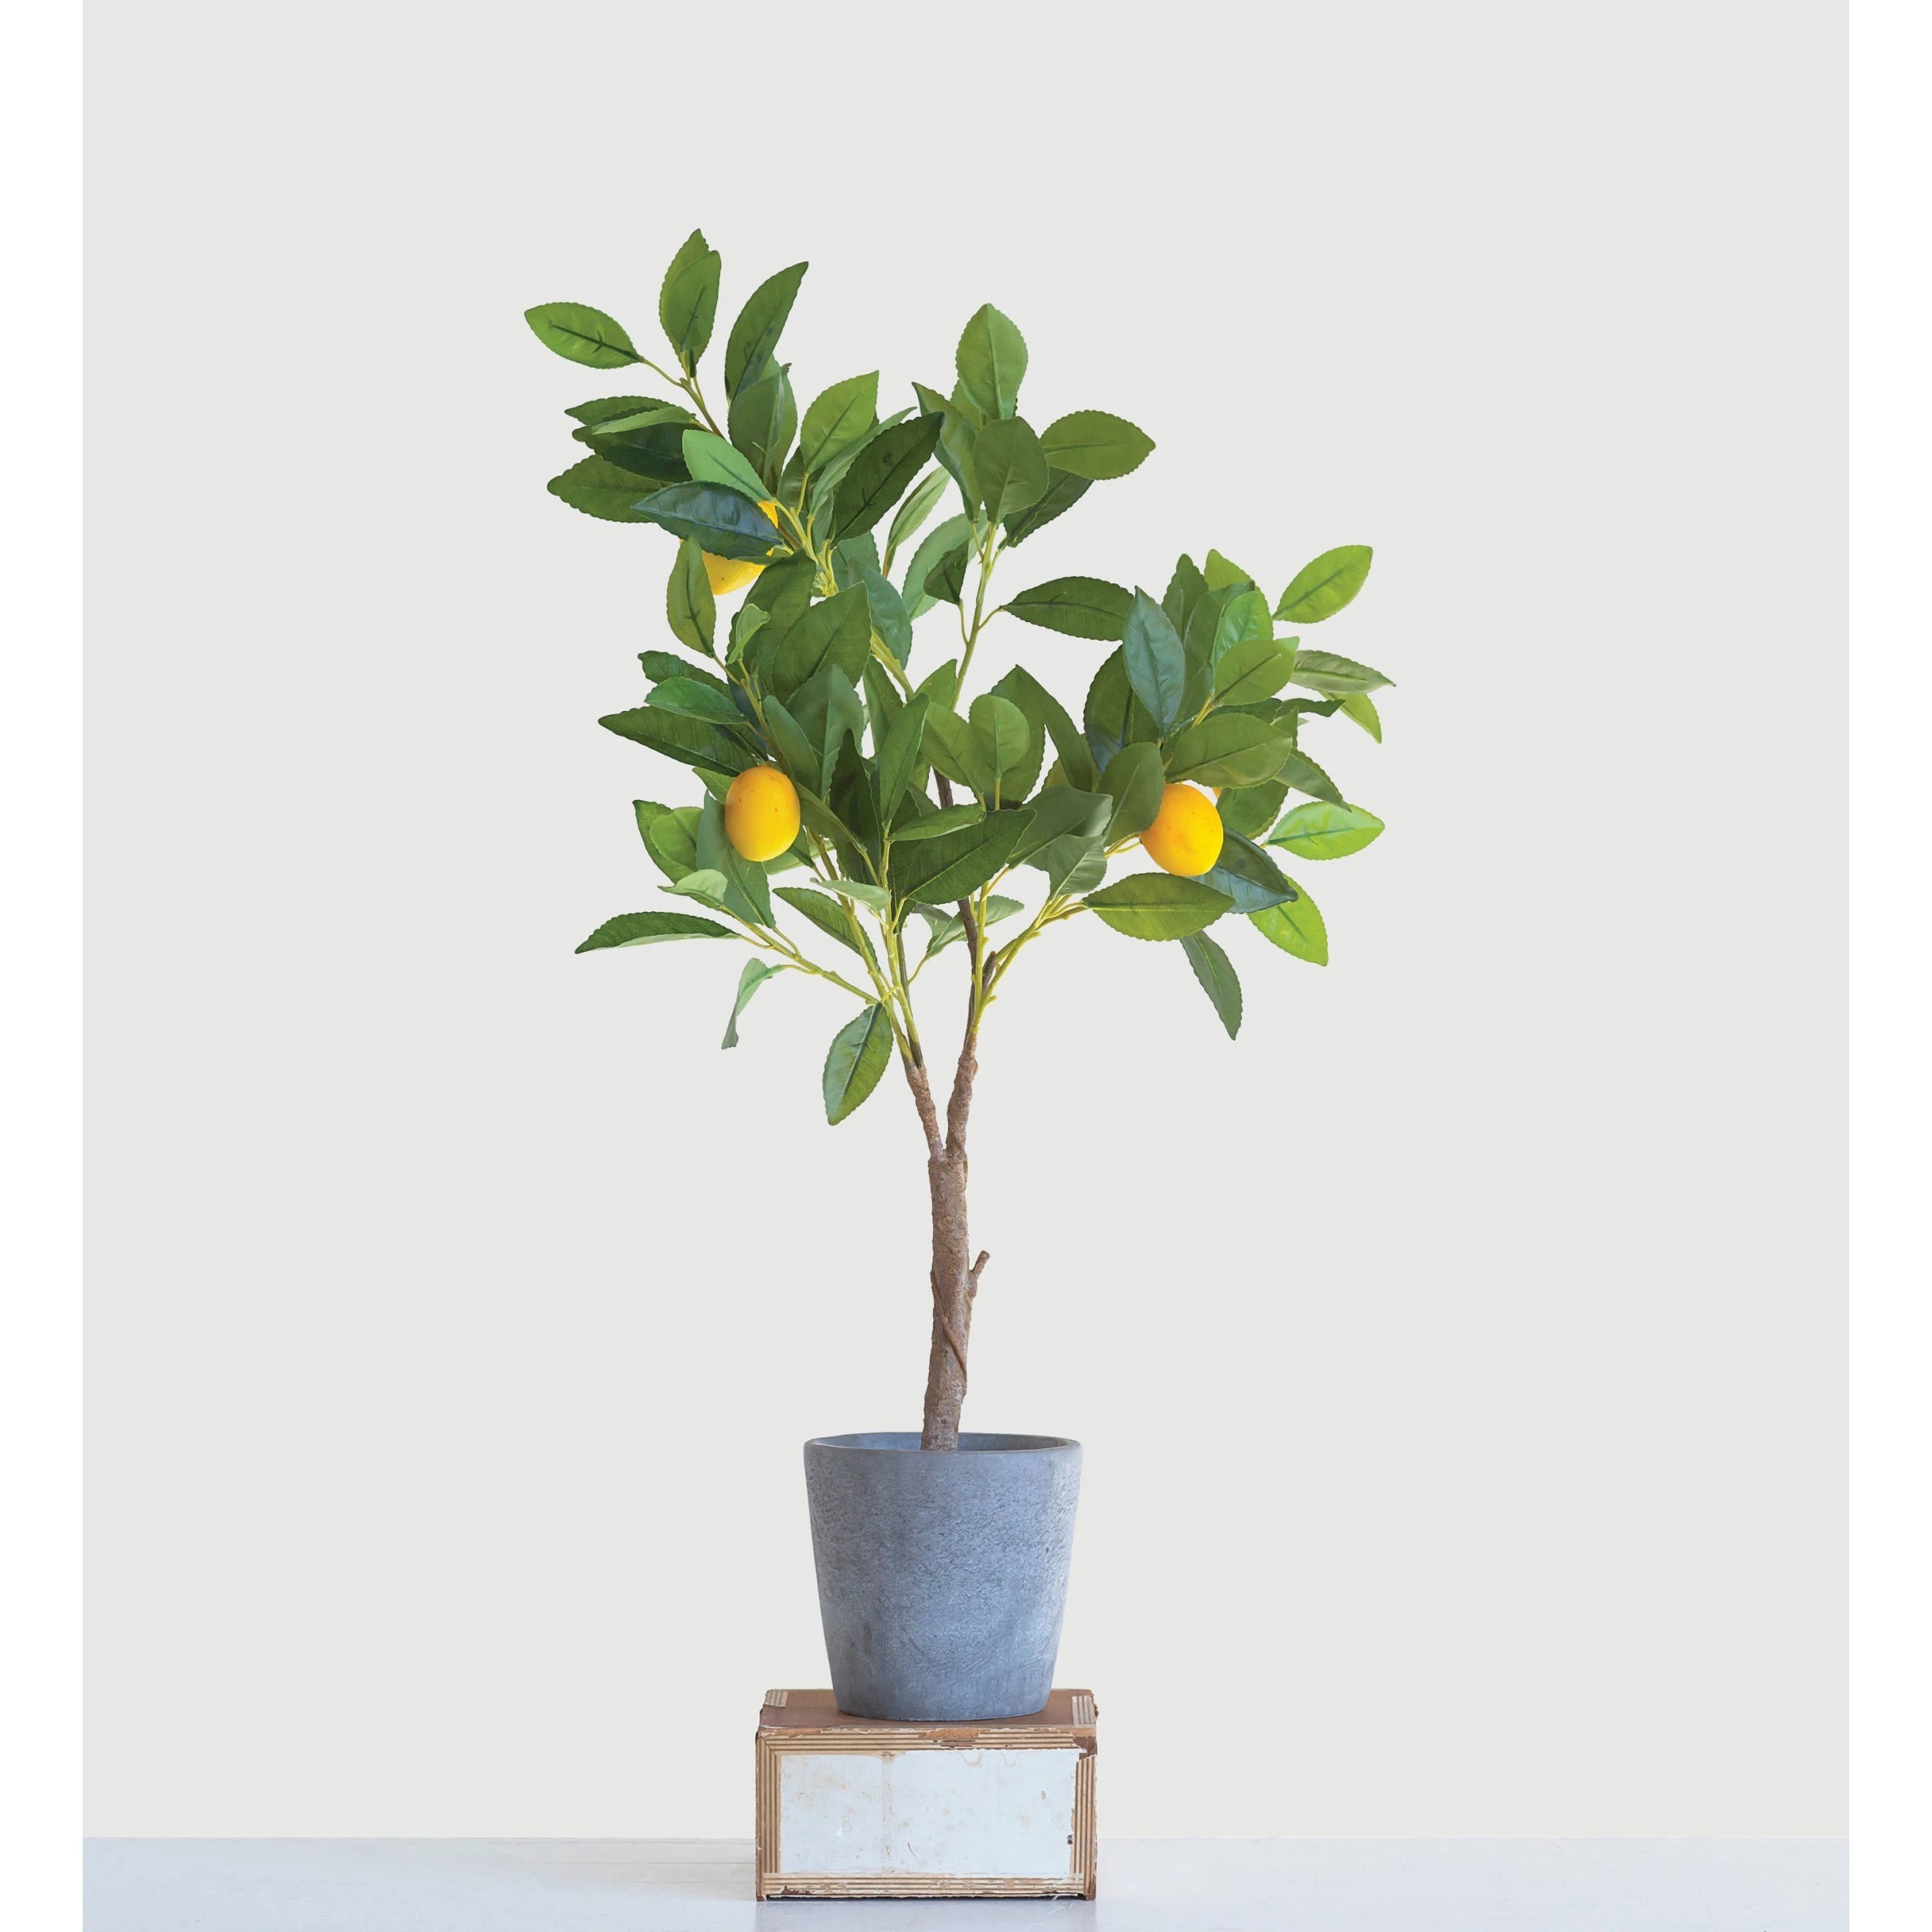 Faux Lemon Tree in Cement Pot - Image 1